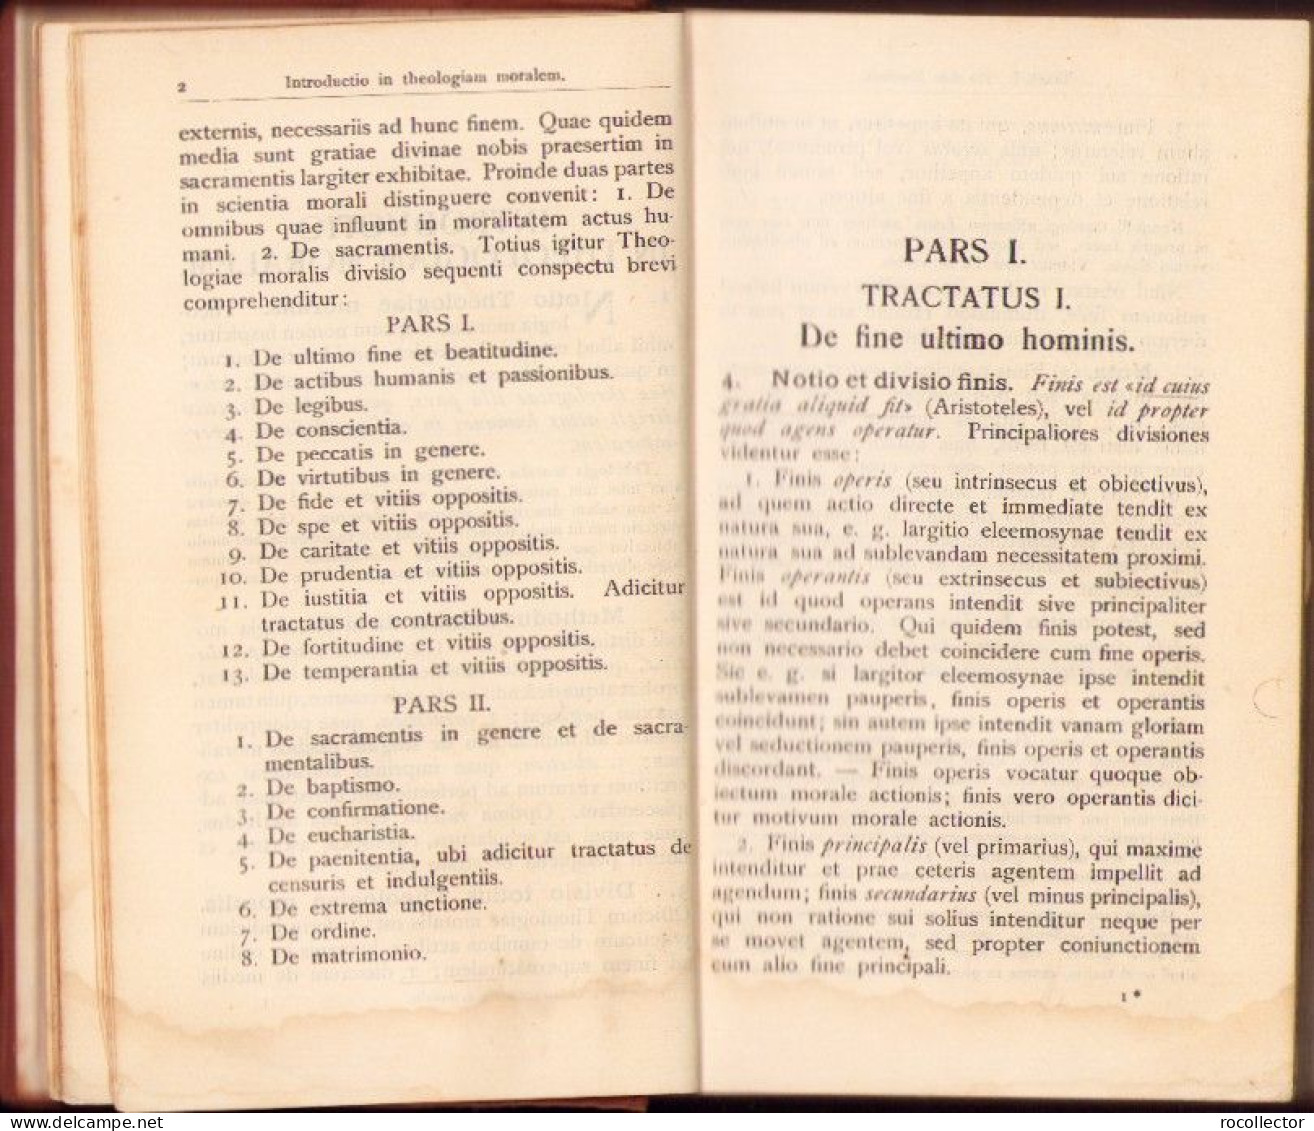 Vademecum theologiae moralis in usum examinandorum et confessariorum auctore Dominico Prümmer 1921 C4047N